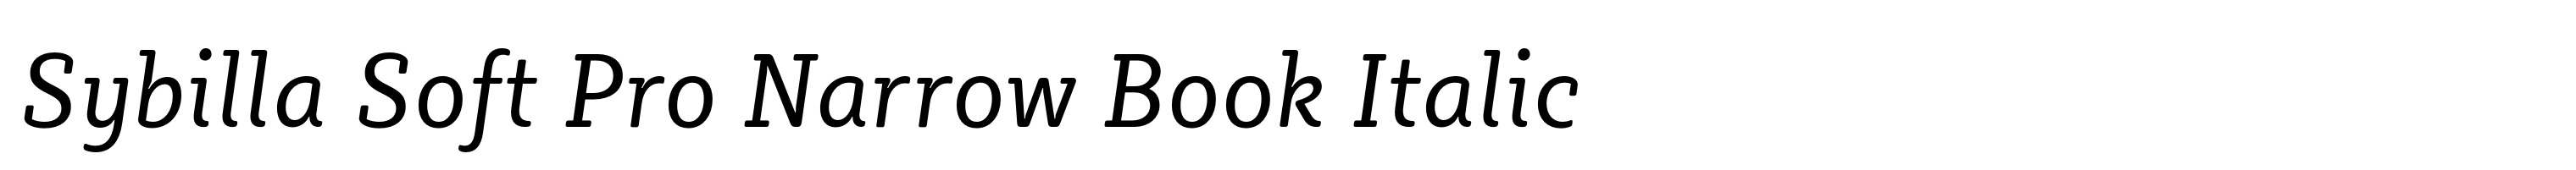 Sybilla Soft Pro Narrow Book Italic